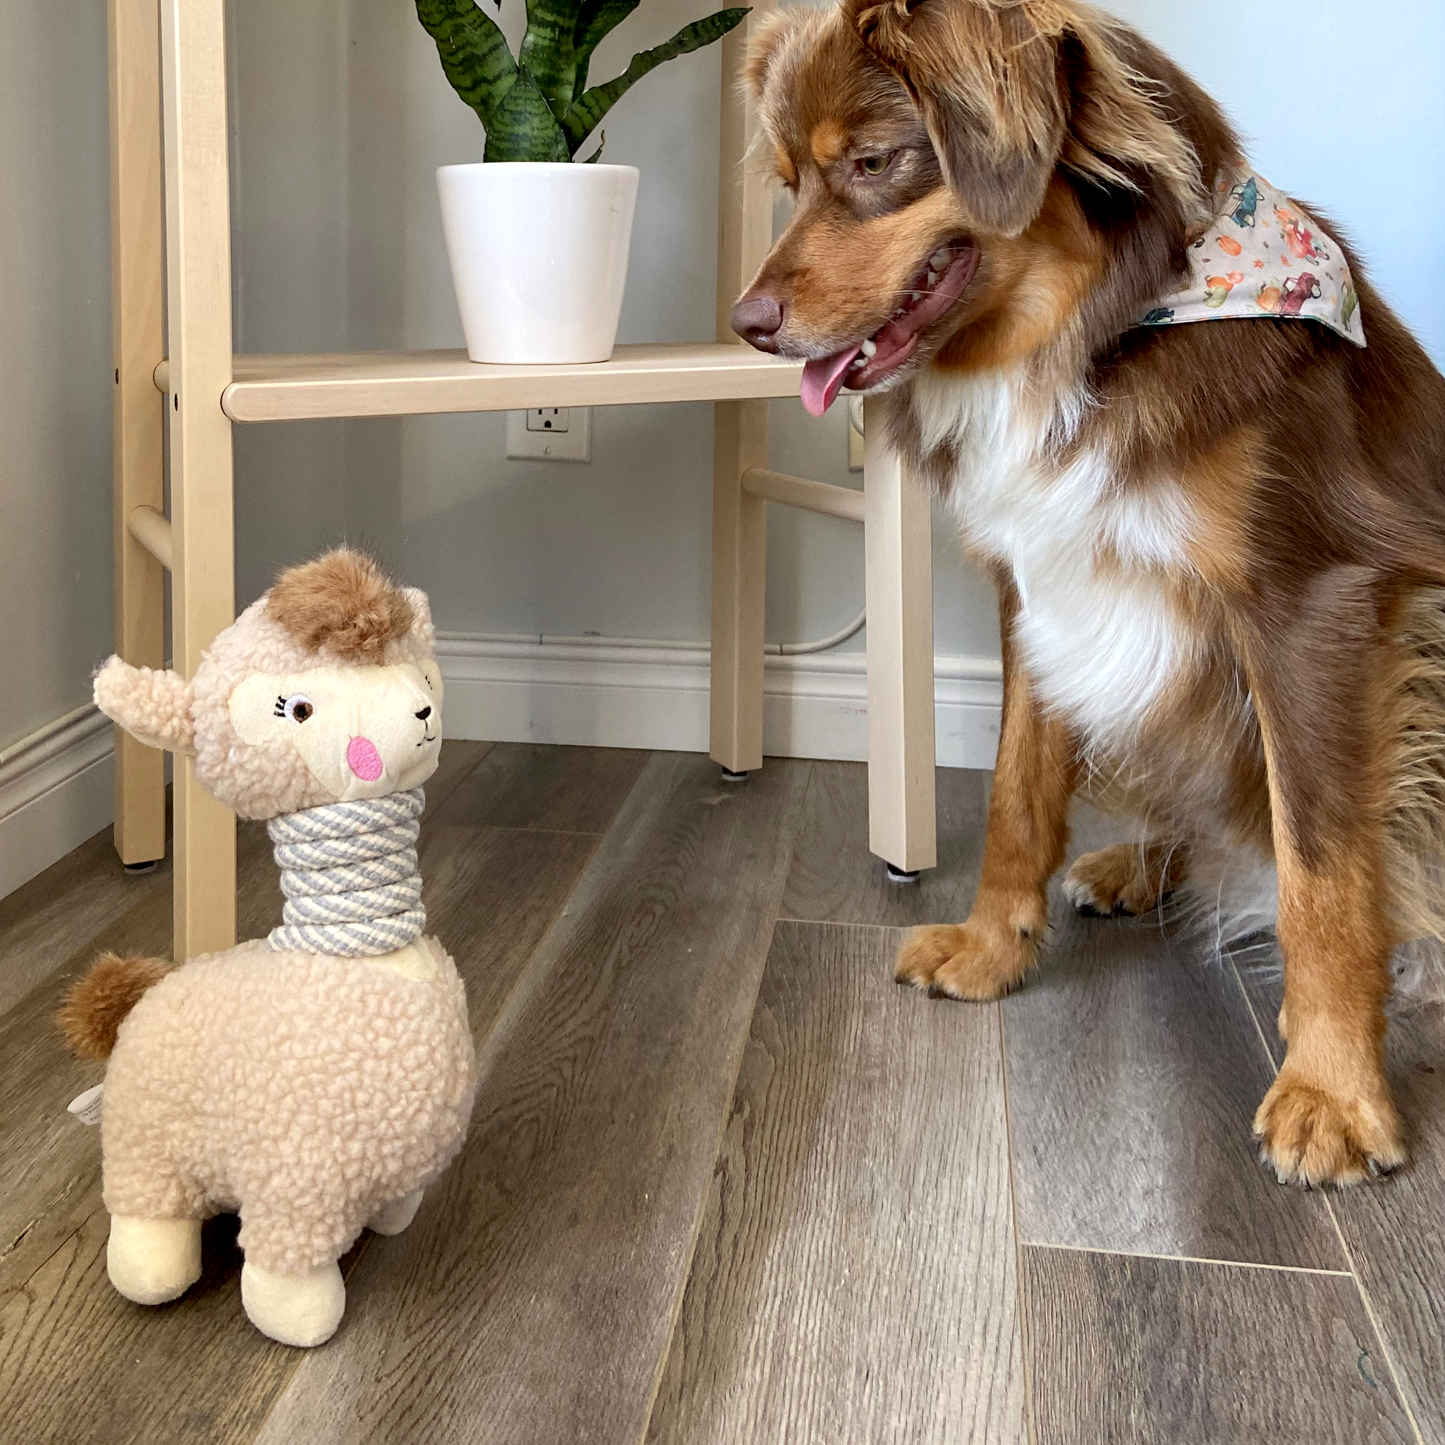 Plush toy for dog, llama style